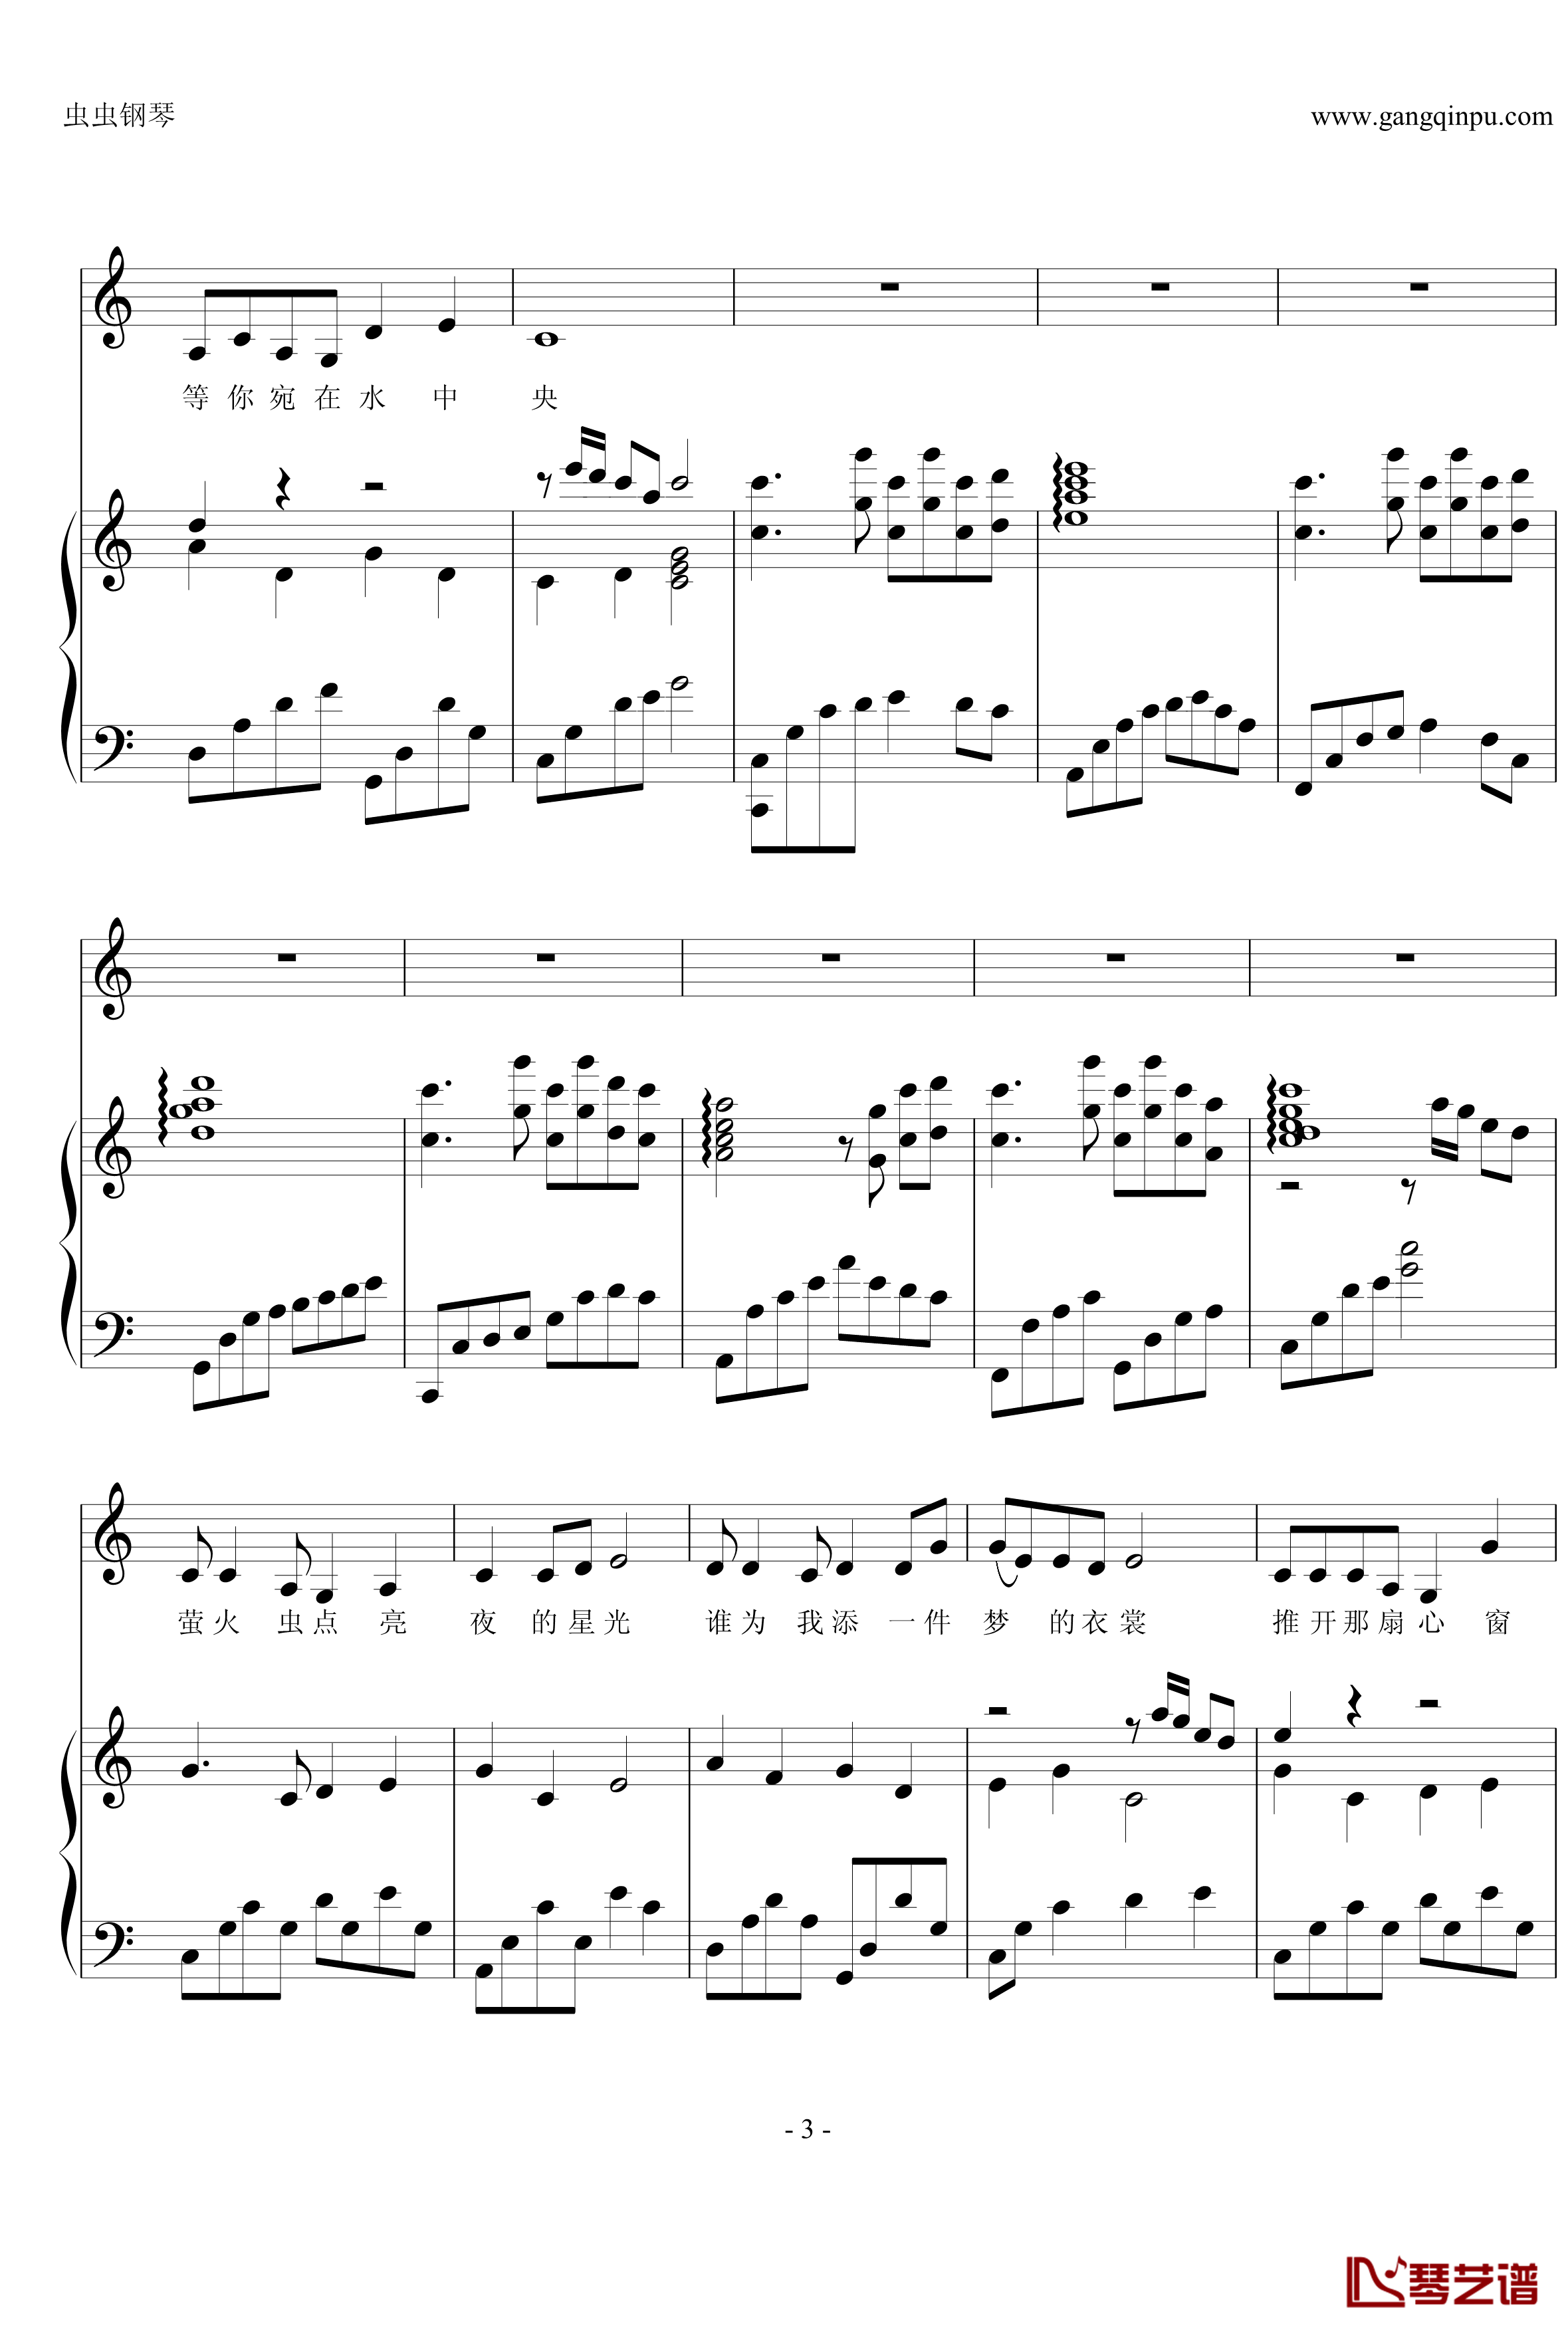 荷塘月色钢琴谱-钢伴弹唱-带歌词-凤凰传奇3